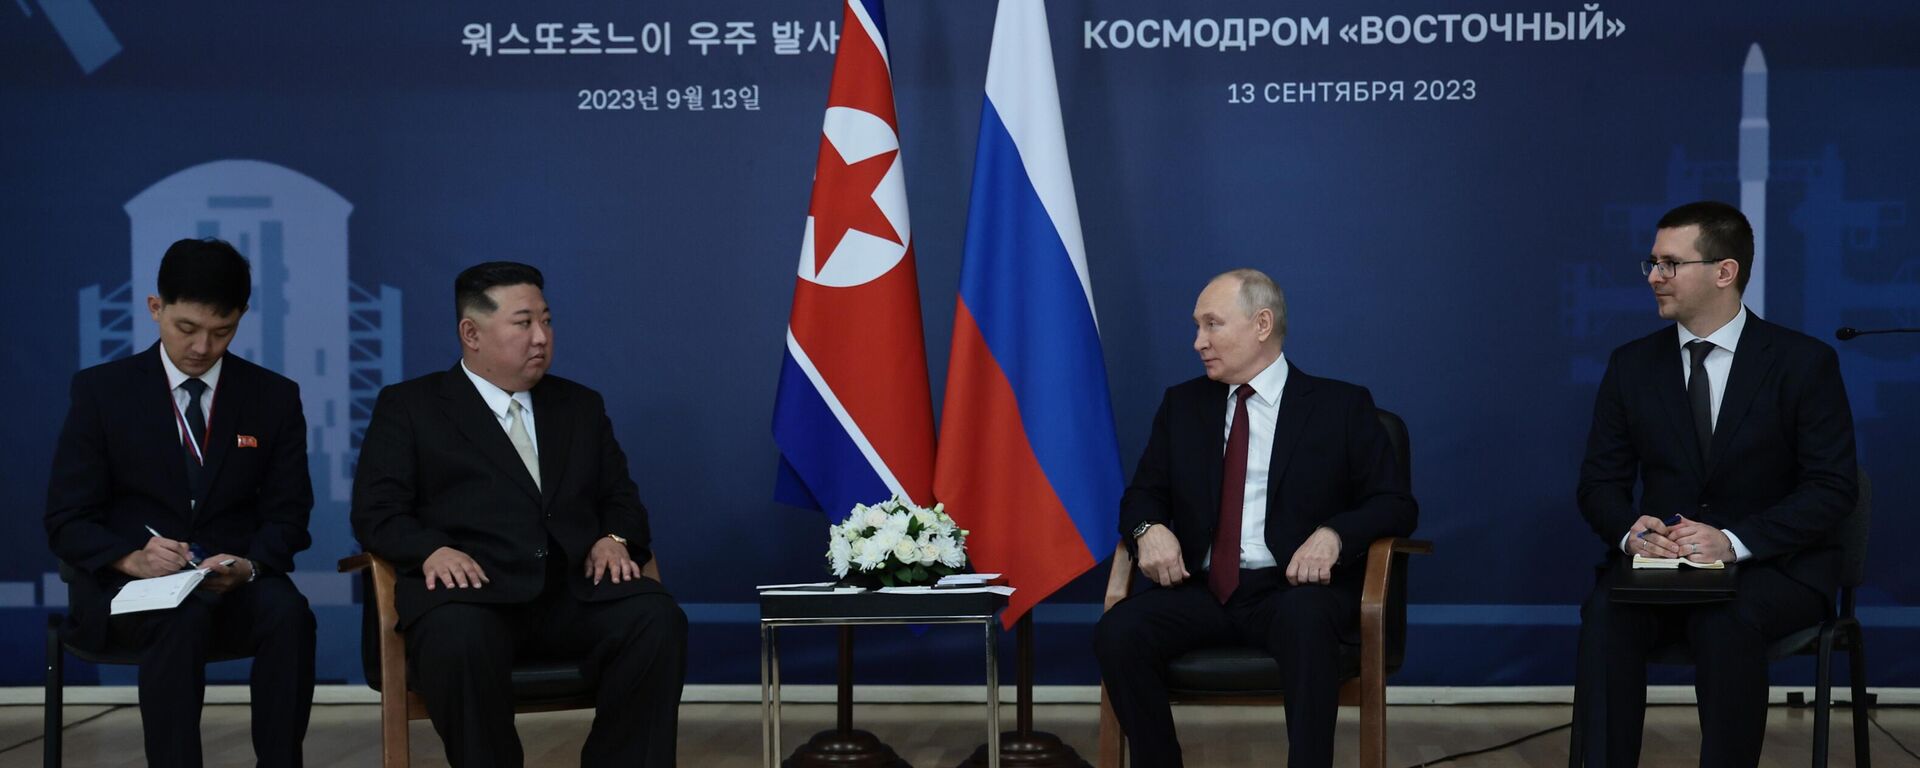 Sastanak lidera Severne Koreje Kim Džong Una i predsednika Rusije Vladimira Putina na kosmodromu Vostočni - Sputnik Srbija, 1920, 13.09.2023